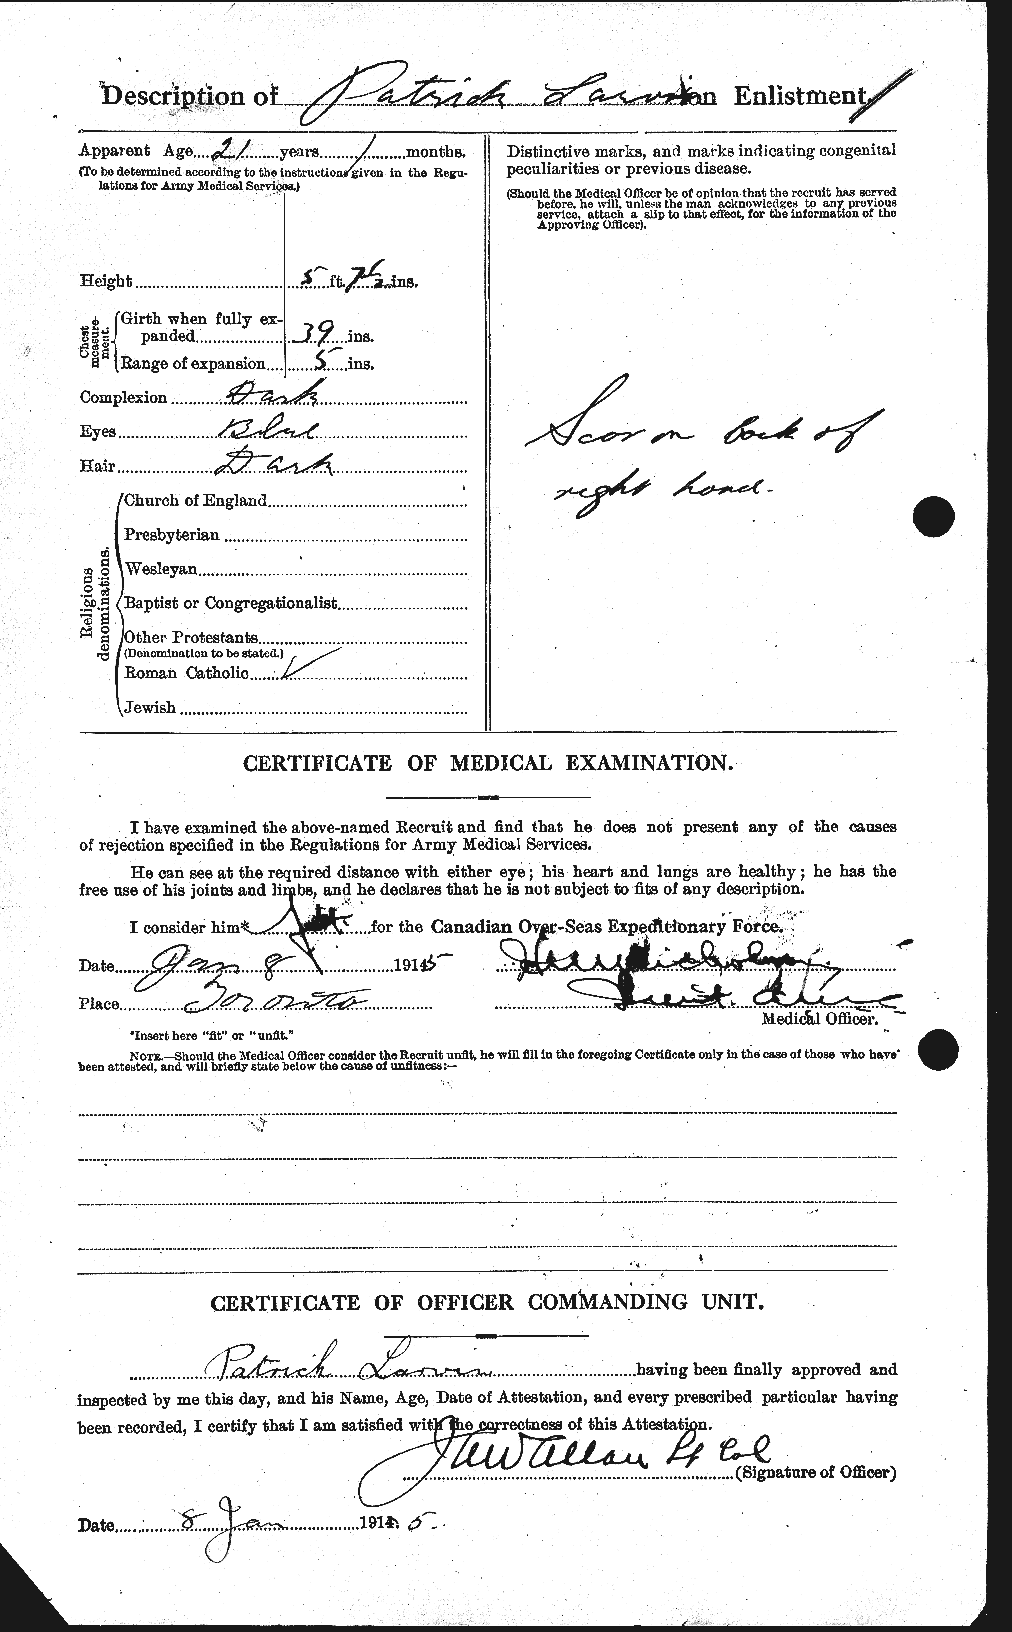 Dossiers du Personnel de la Première Guerre mondiale - CEC 451853b